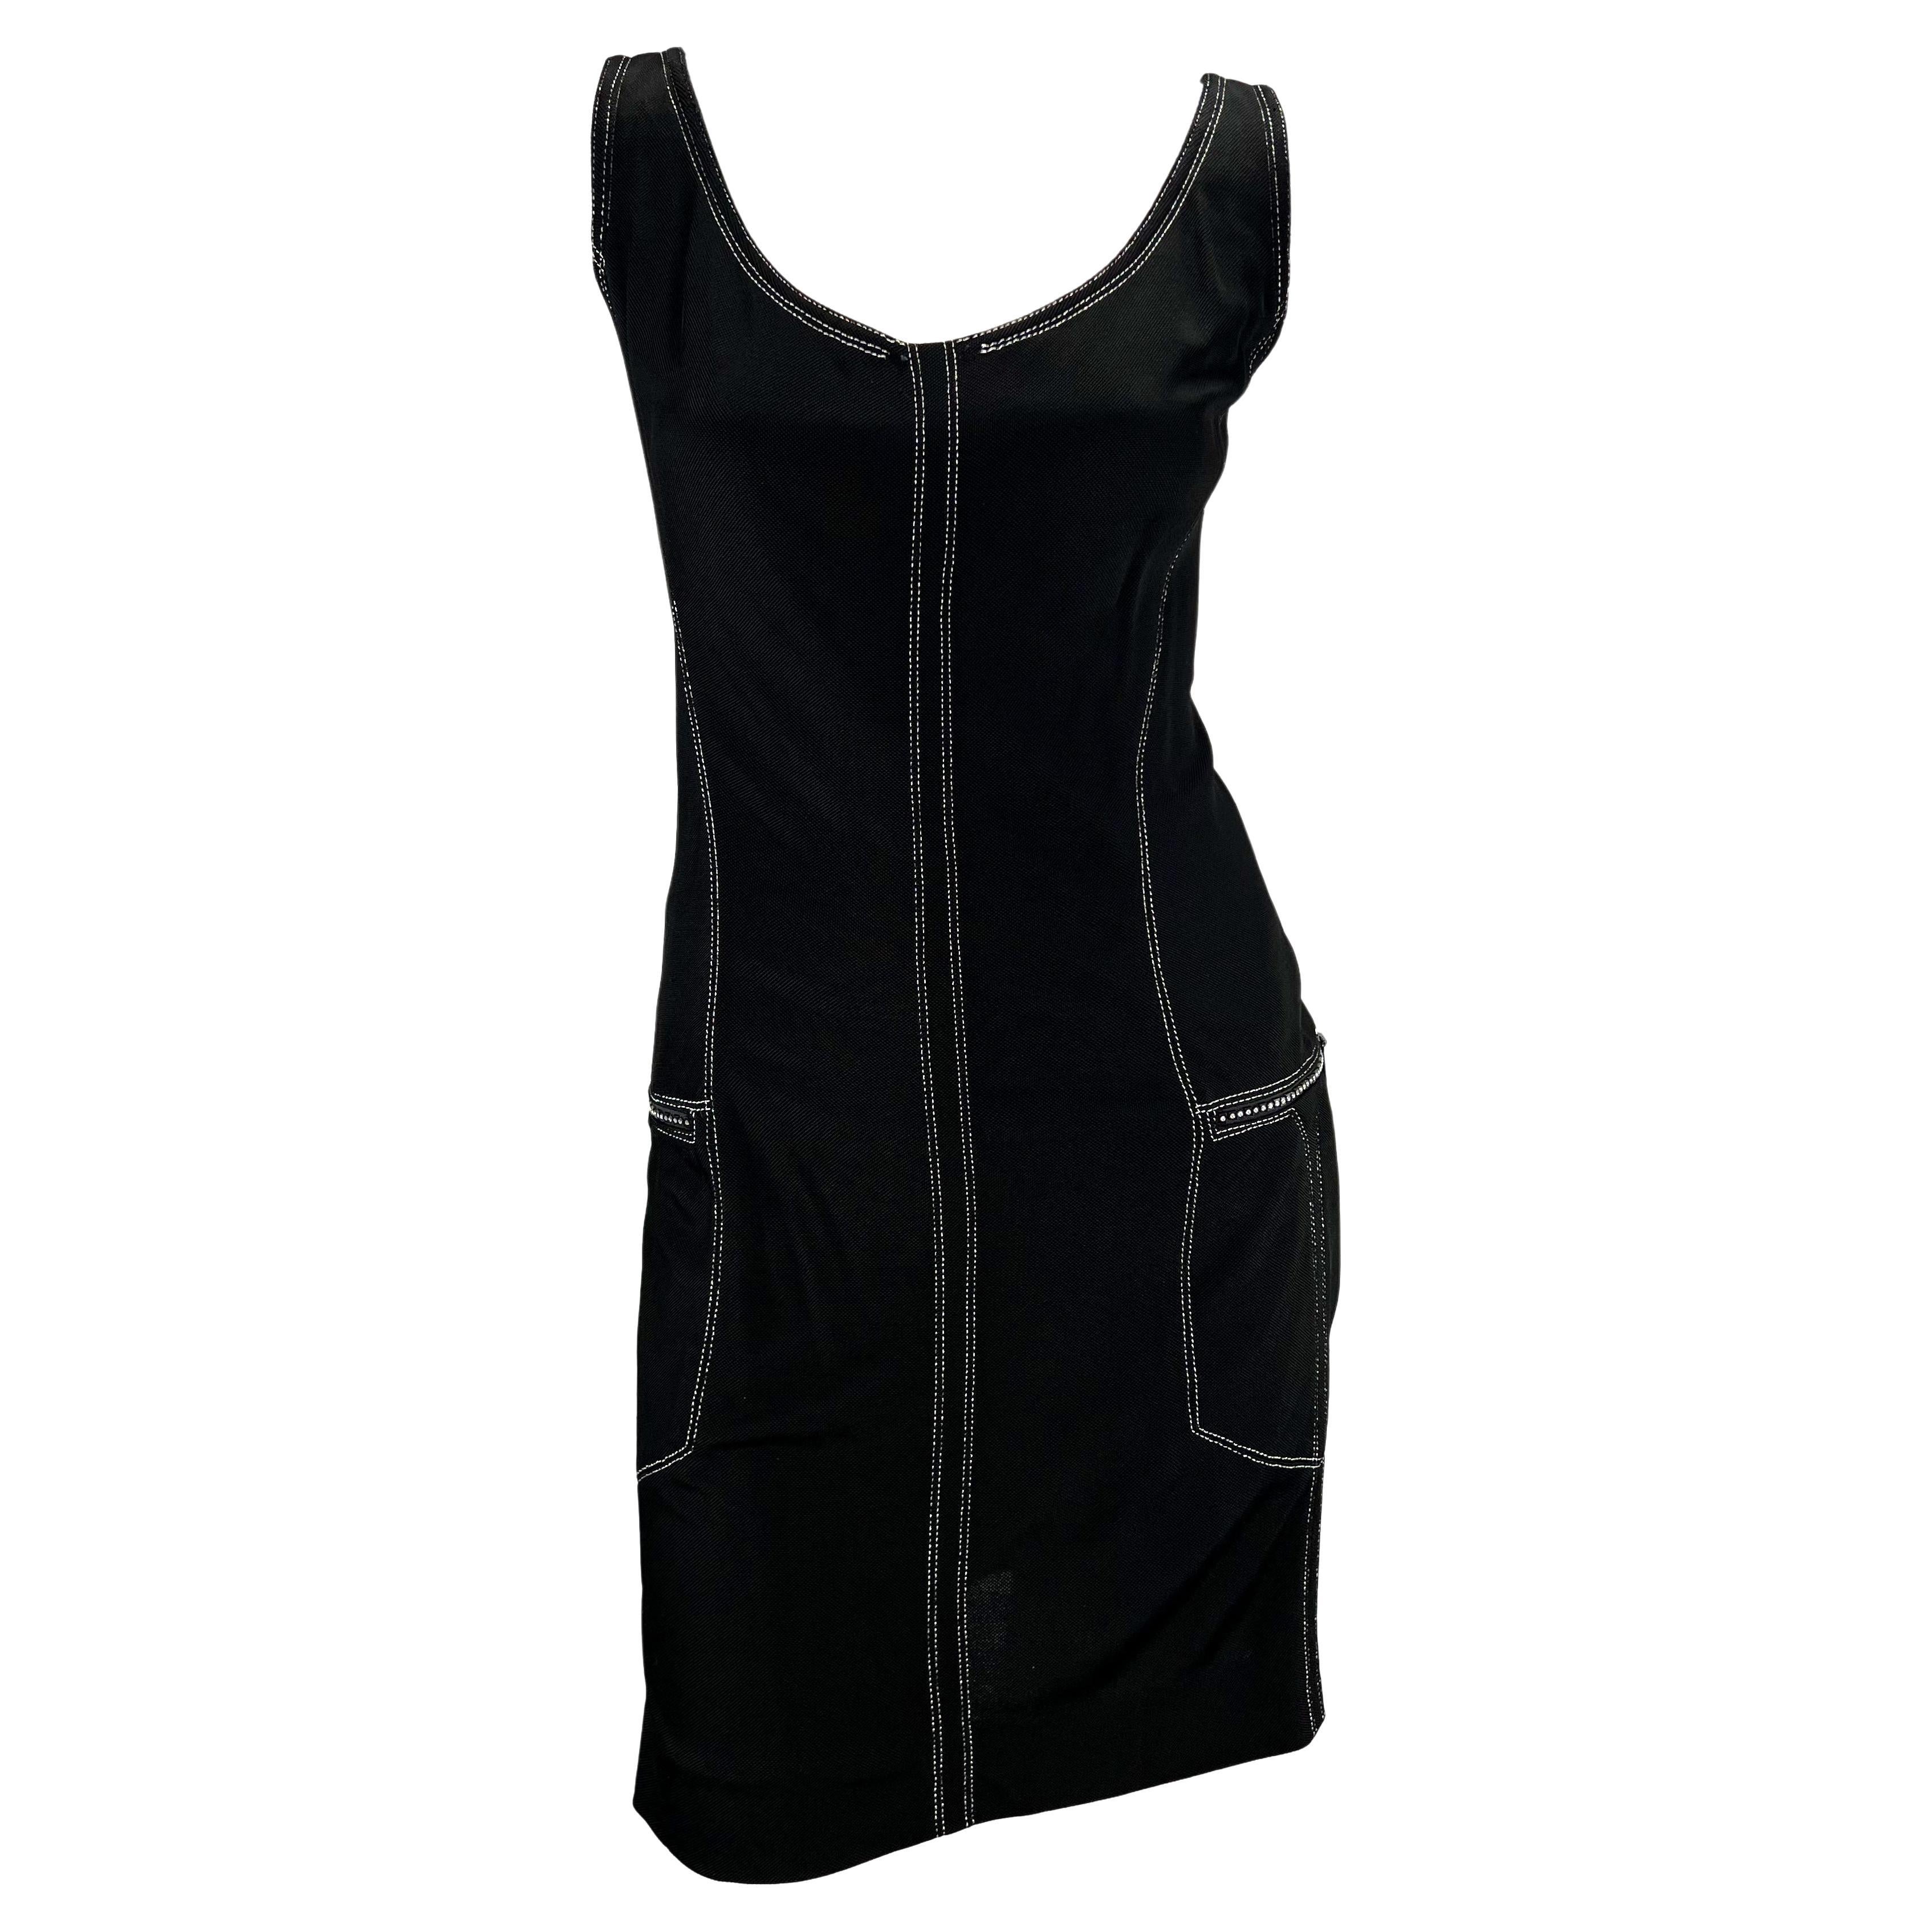 Présentation d'une robe noire sans manches Gianni Versace Couture, conçue par Gianni Versace. Issue de la collection printemps/été 1996, cette robe en tricot est ornée de coutures argentées et de poches zippées ornées de strass sur chaque hanche.